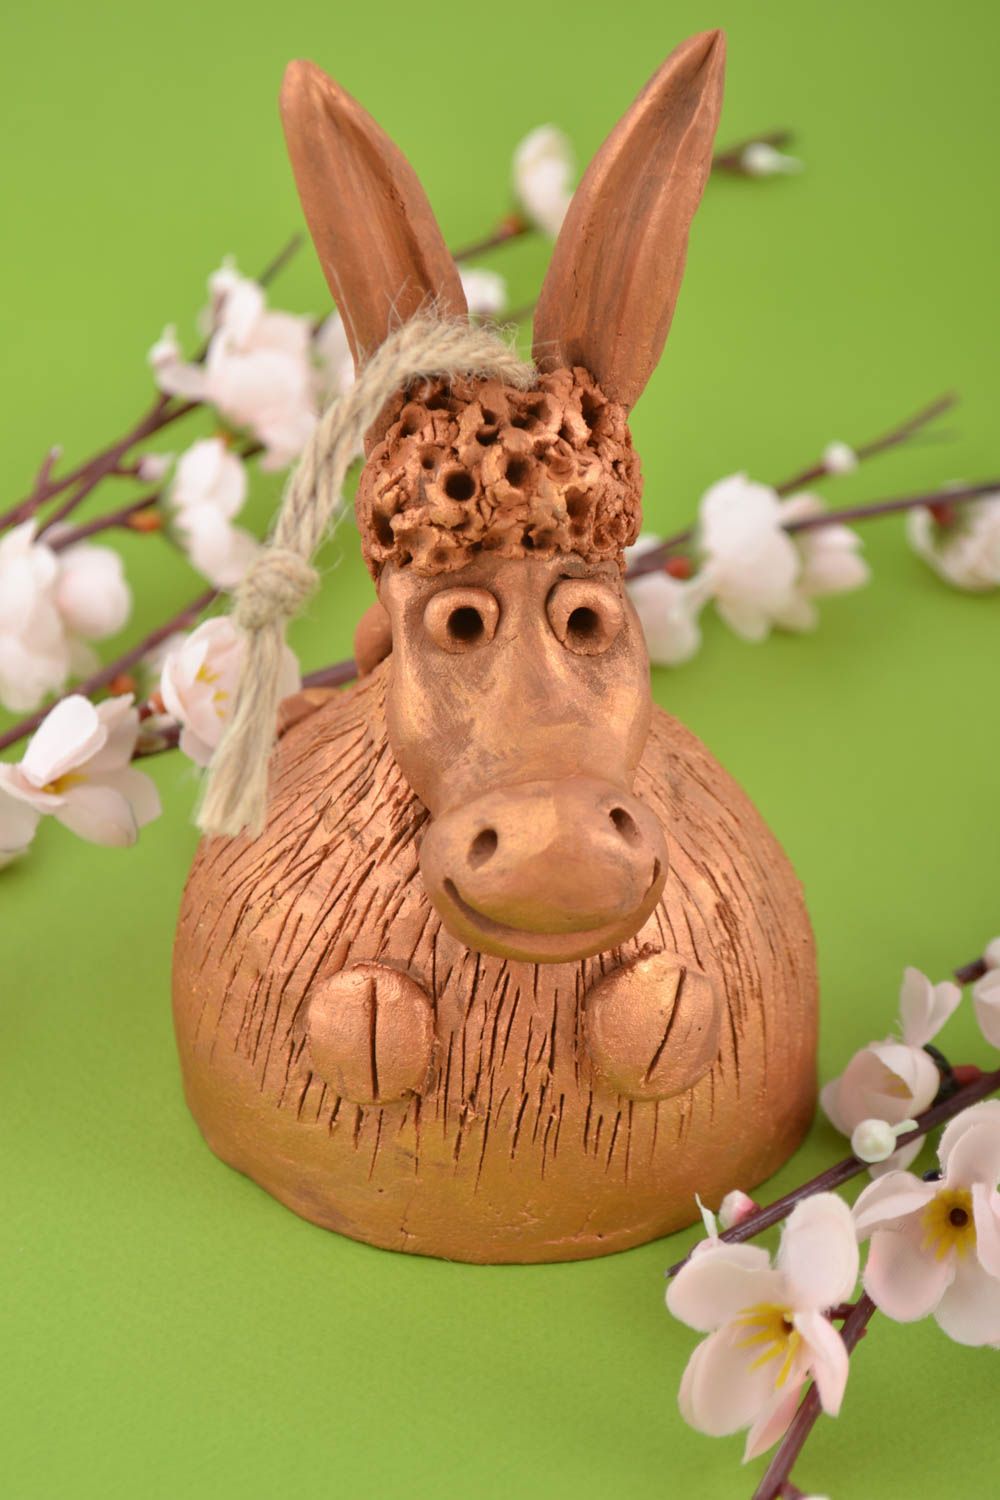 Handmade kleines Glöckchen Deko Esel Figur aus Ton Keramik Souvenir bemalt foto 1